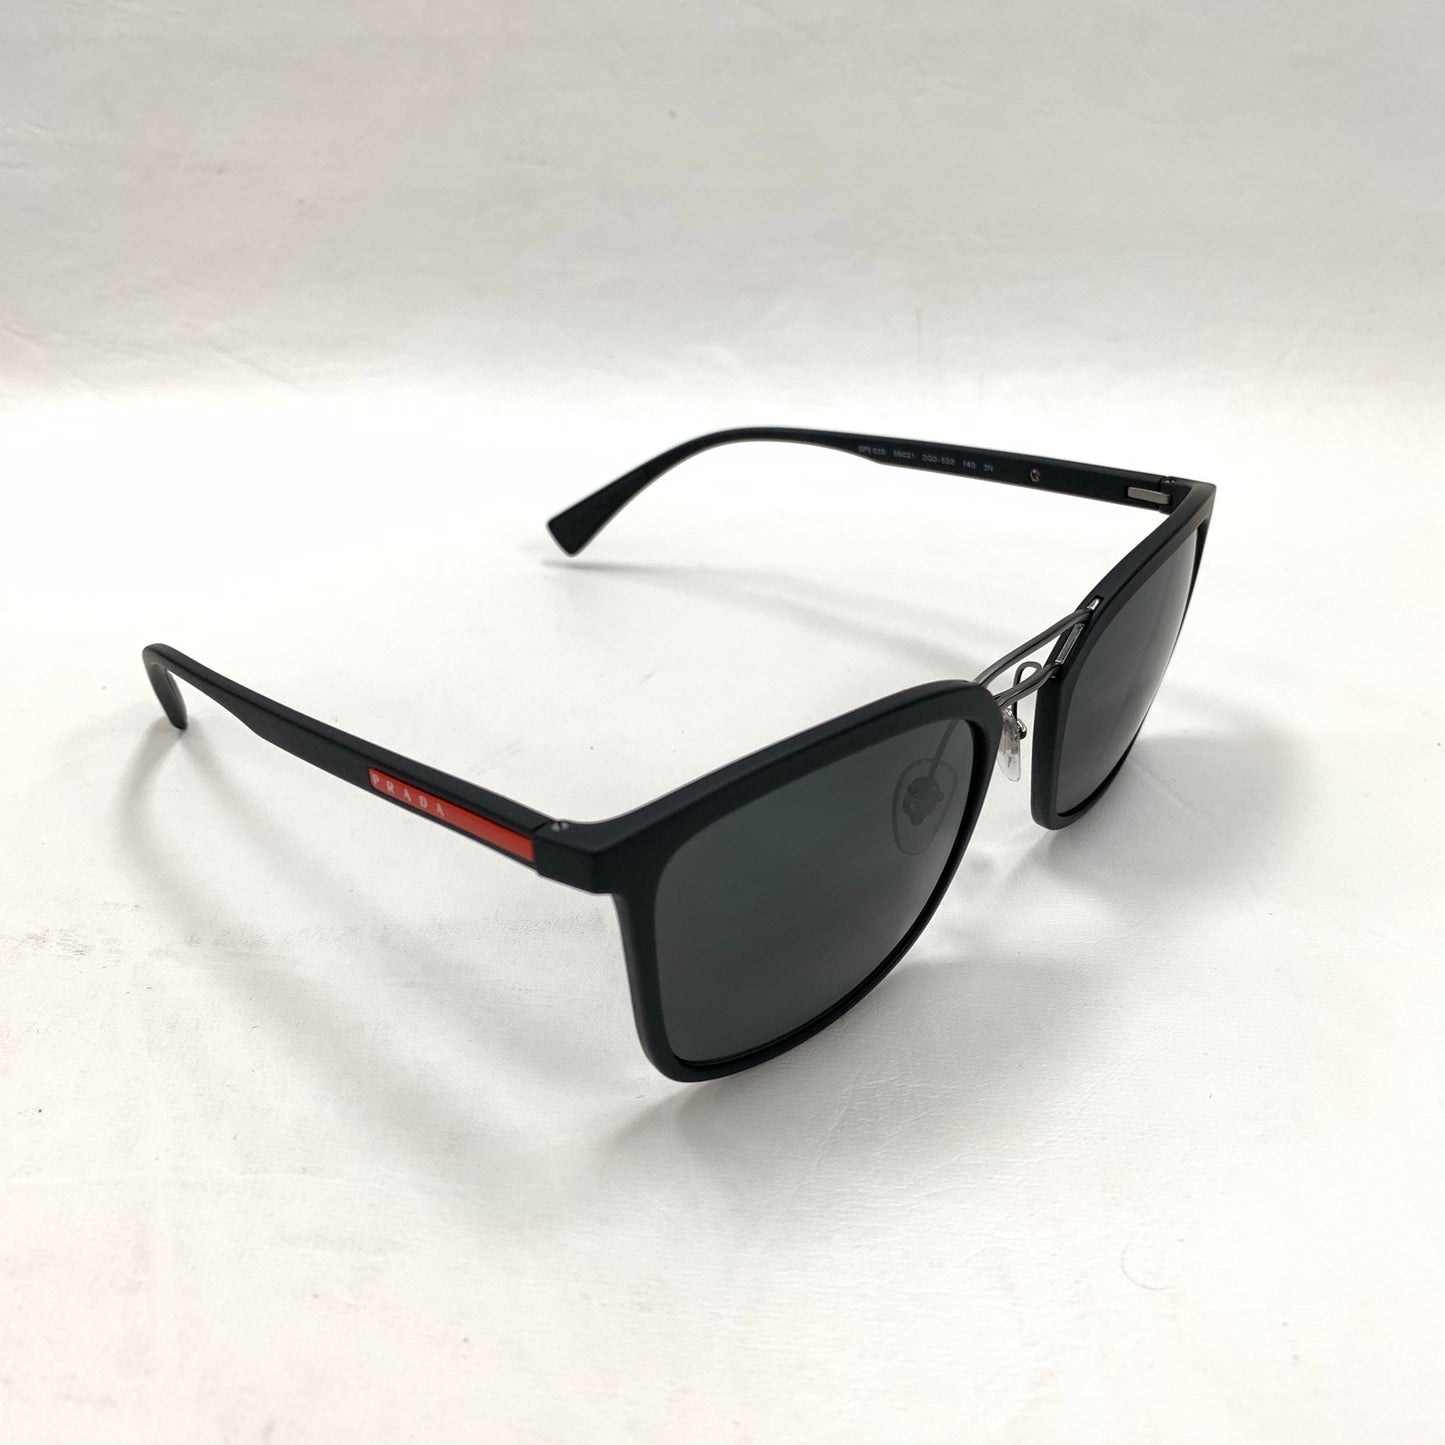 Authentic Prada Black Sunglasses SPS03S